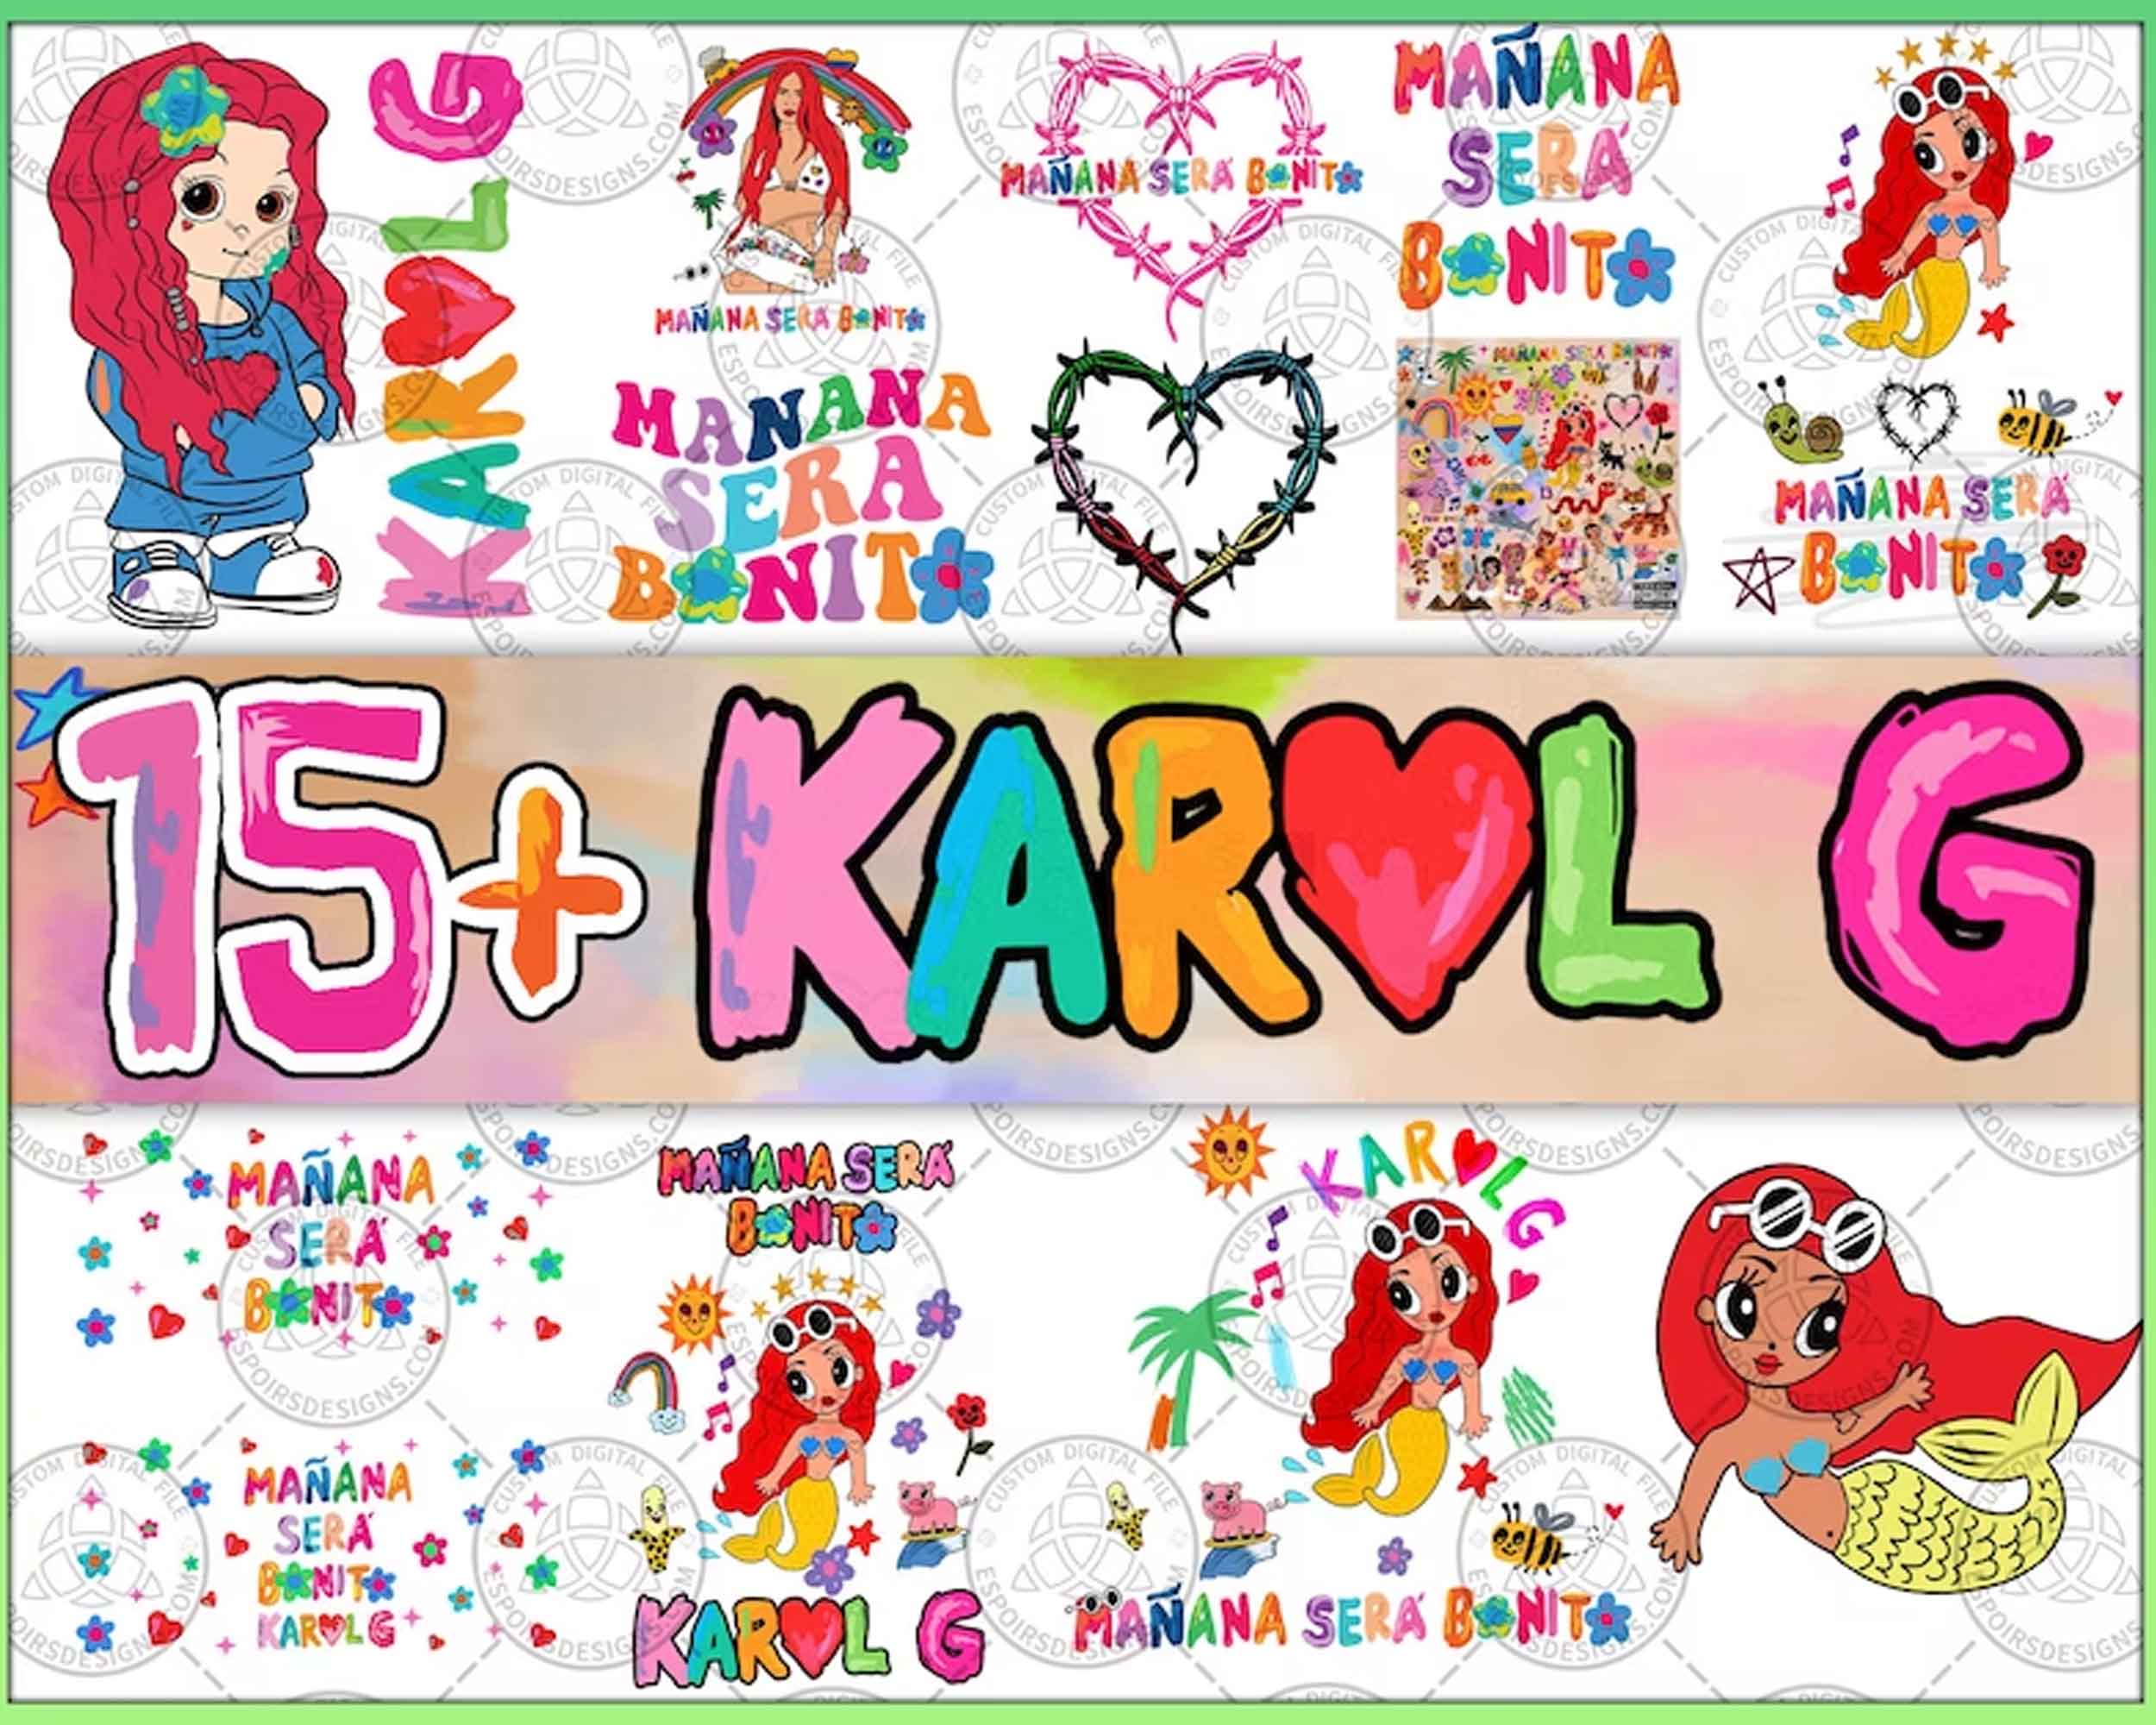 15 Karol G Glass Can Wrap PNG, Manana Sera Bonito, Karol G tumbler, Karol G New Album, Digital Download